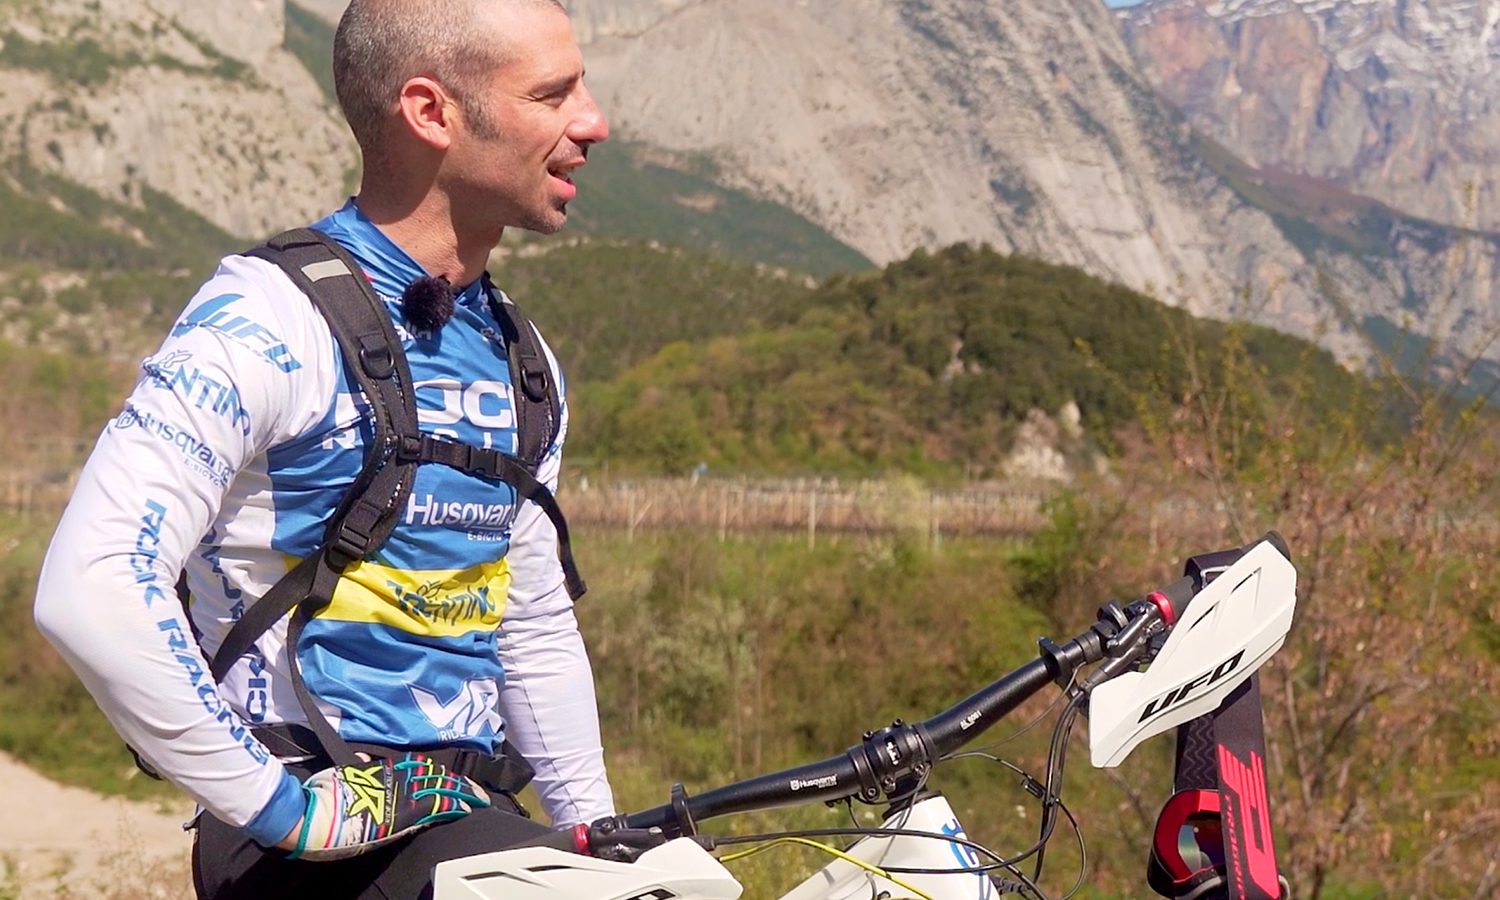 Discovering: Alla scoperta del Garda Trentino in mtb con Marco Melandri